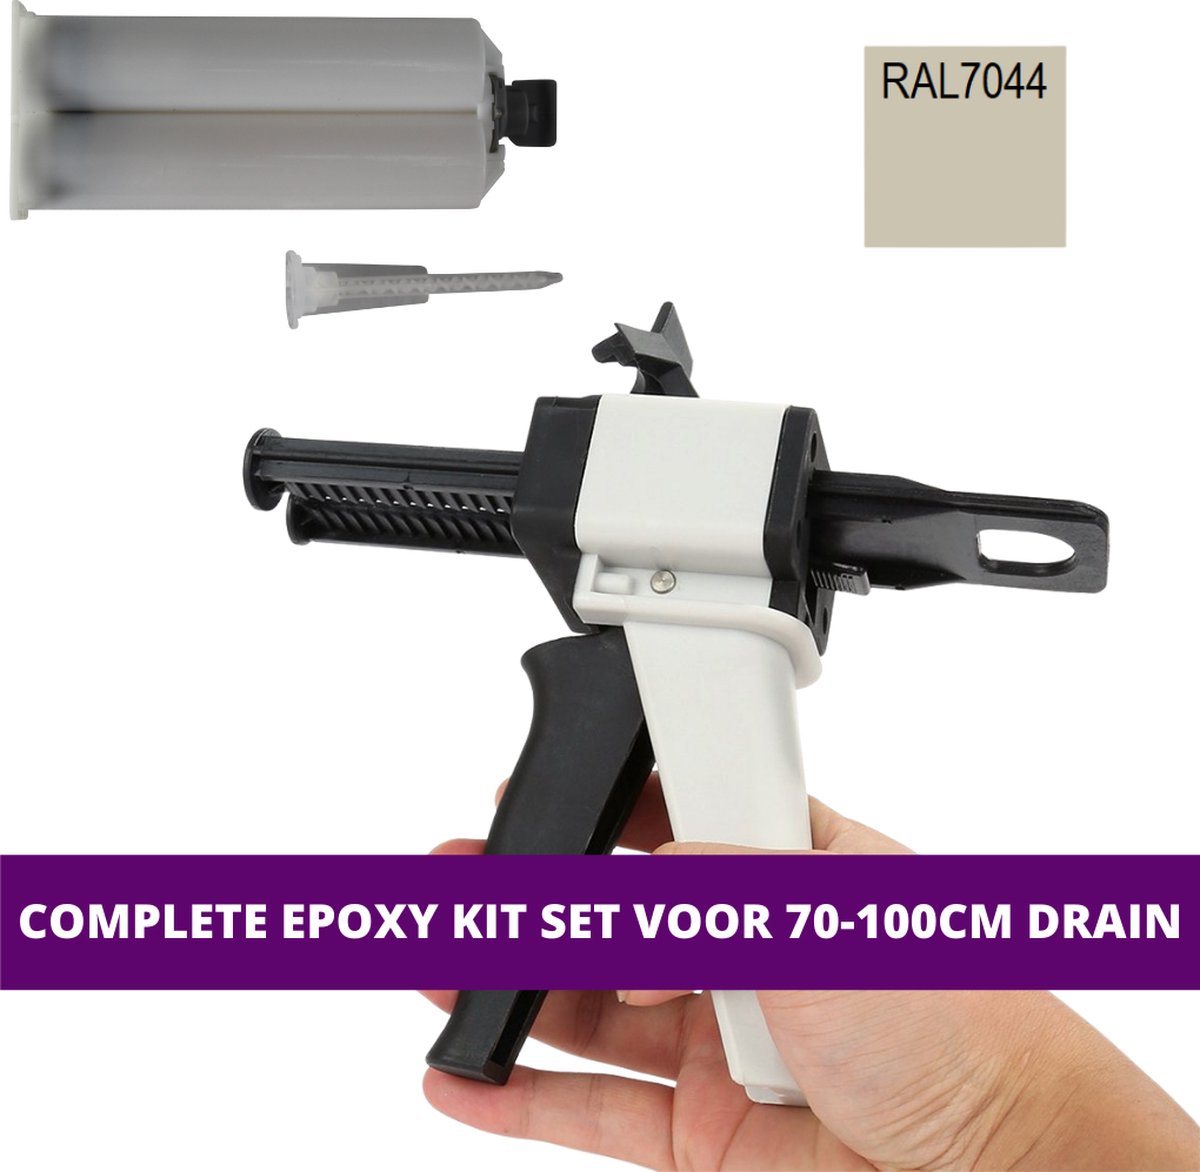 Epoxy kit set voor douchegoten - 70 t/m 100 cm lang - Zijdegrijs - RAL7044/5 - 2-componenten